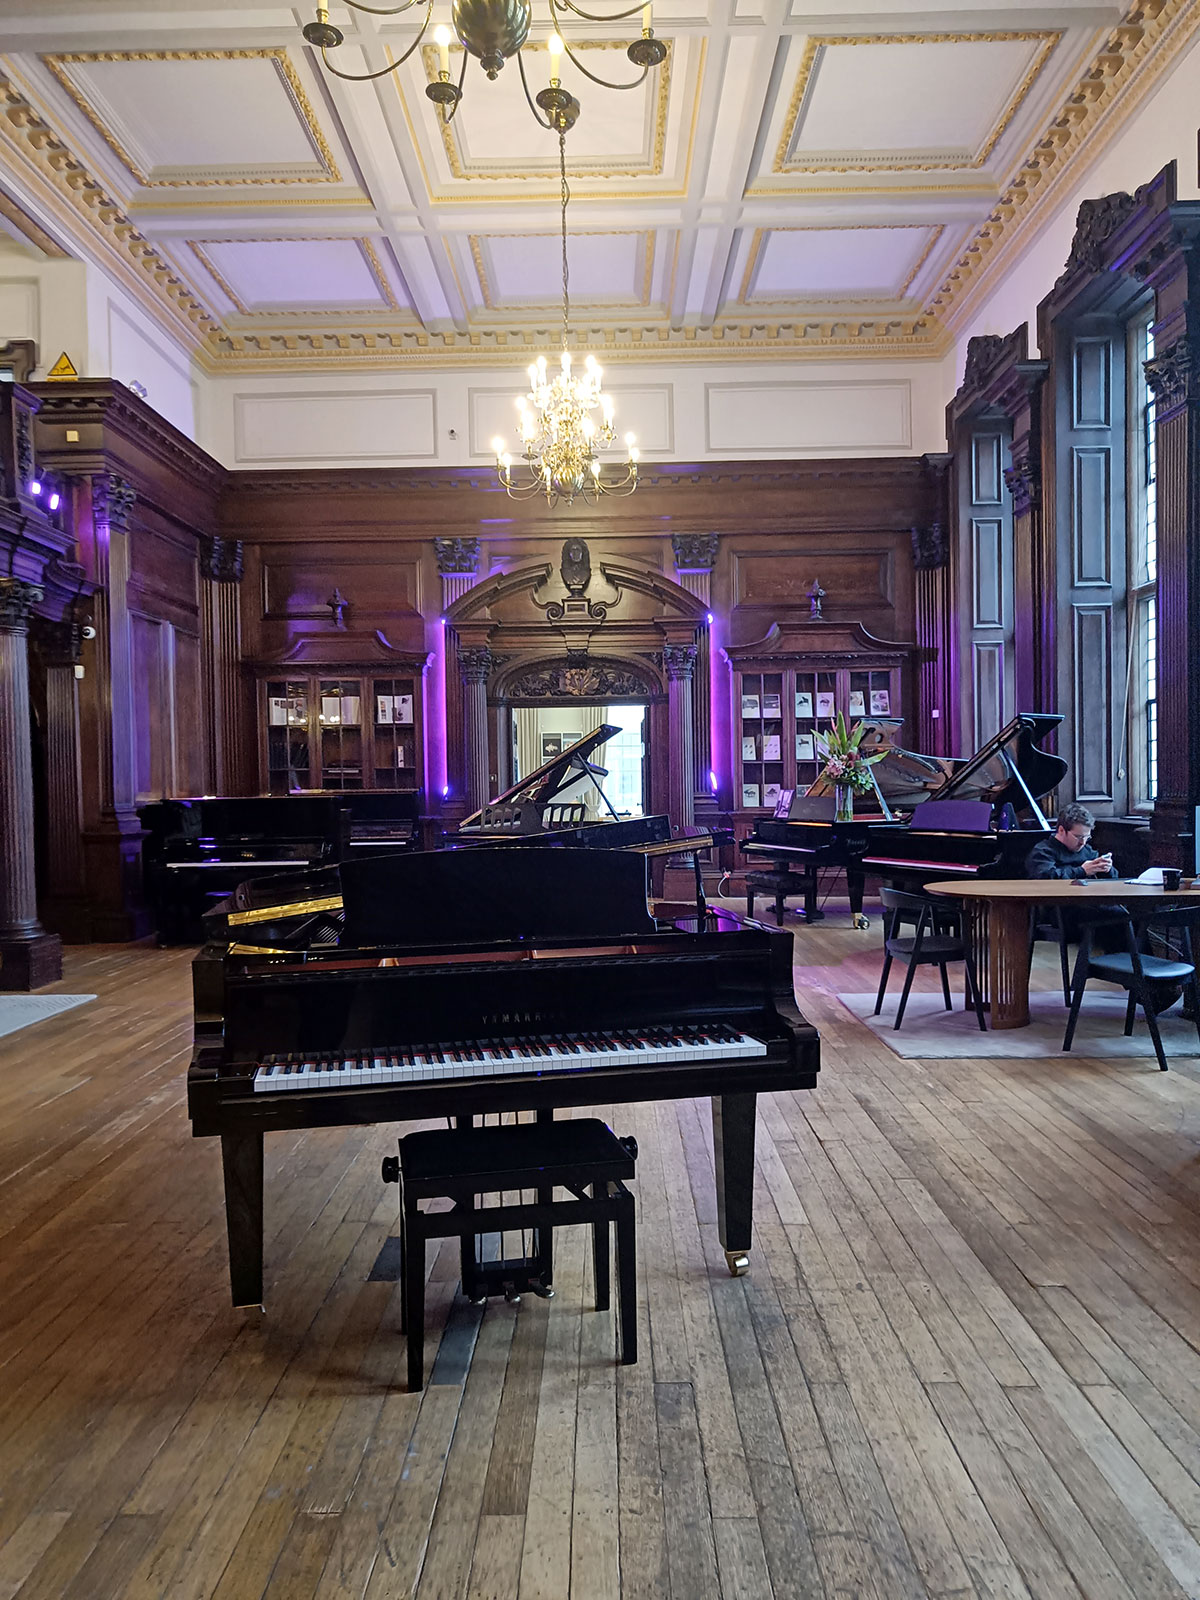 Raum mit hohen barocken Decken und Holzfußboden im Yamaha-Store London. Darin diverse Klaviere und Flügel.